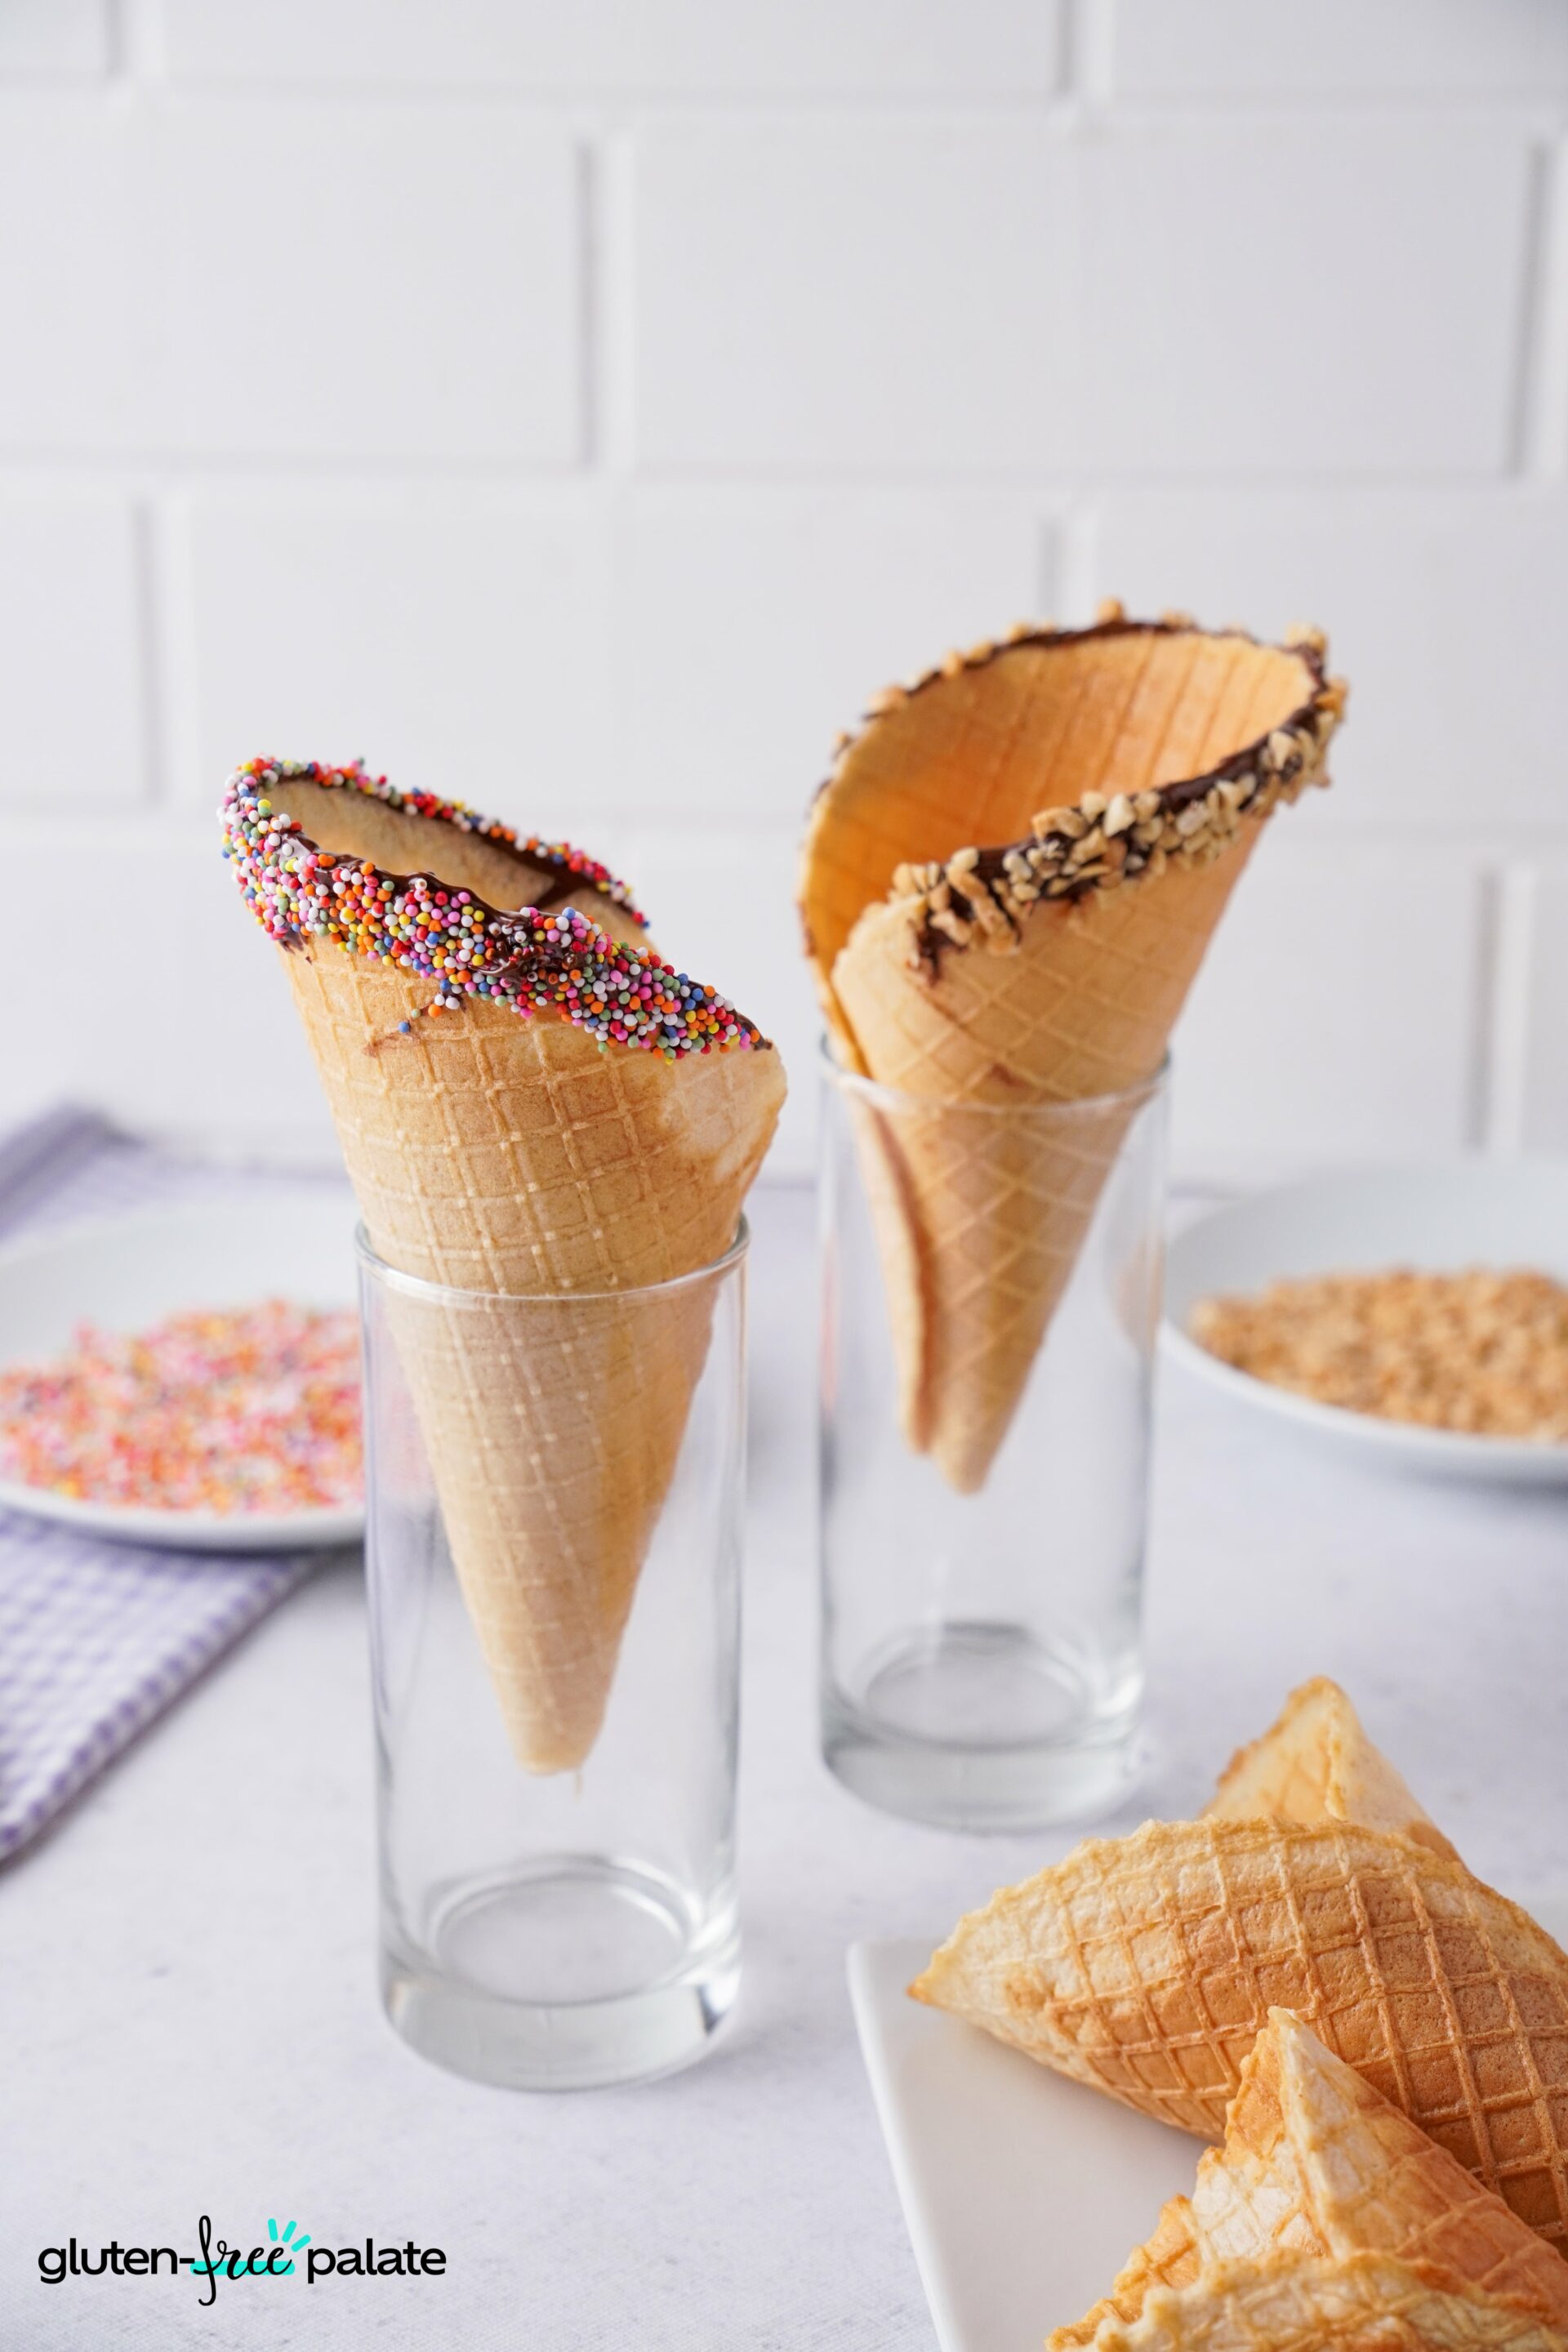 Gluten-free ice cream cones in glasses